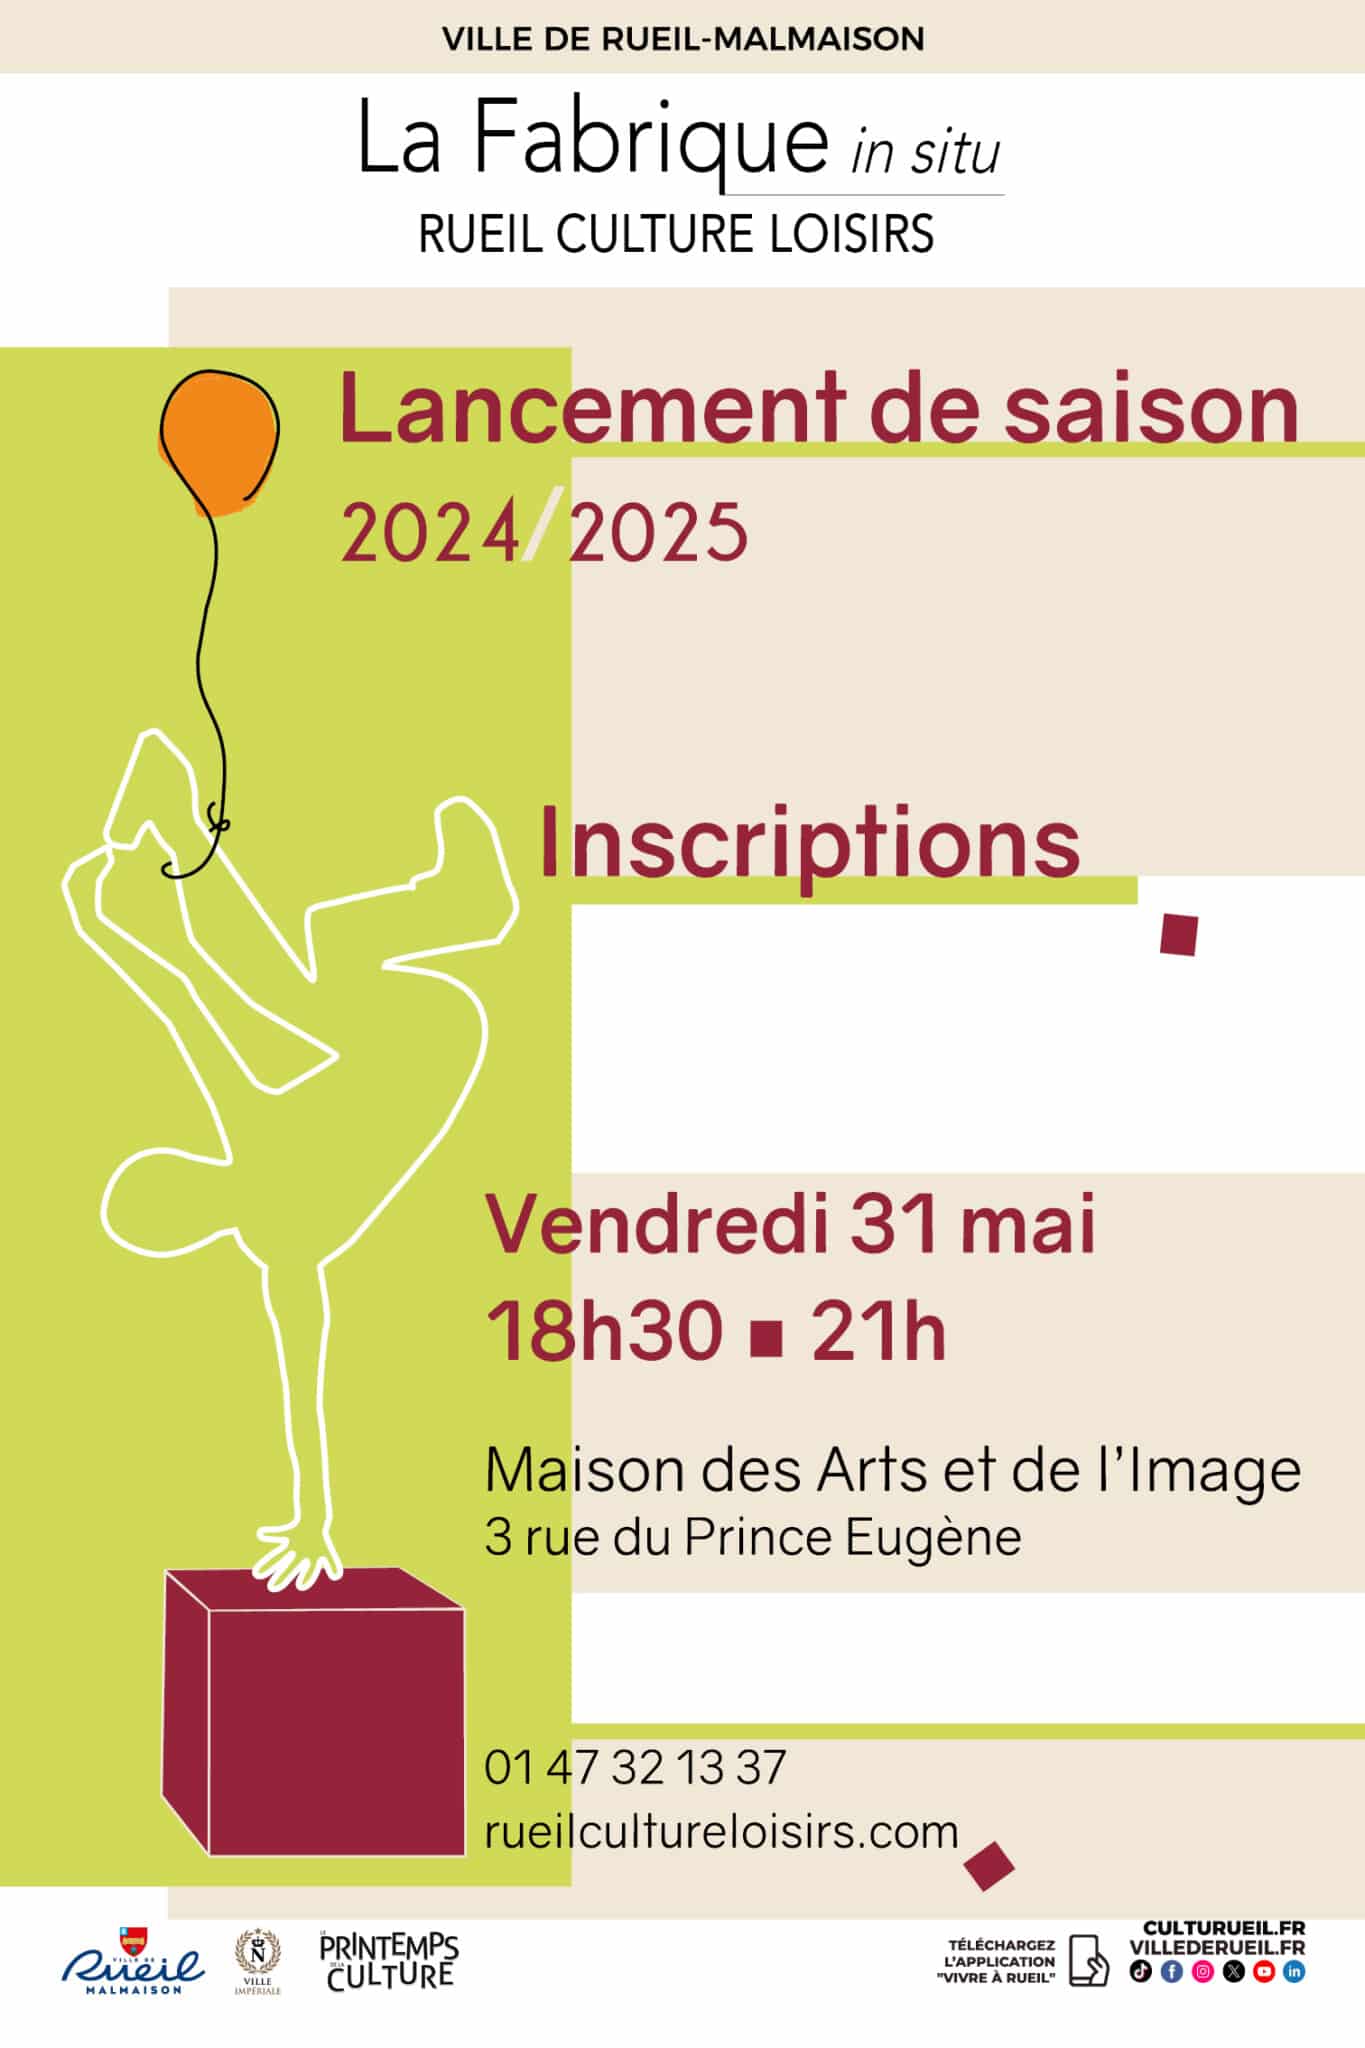 LANCEMENT DE LA SAISON 2024/2025 DE LA FABRIQUE RUEIL CULTURE LOISIRS - ouverture des inscriptions - vendredi 31 mai